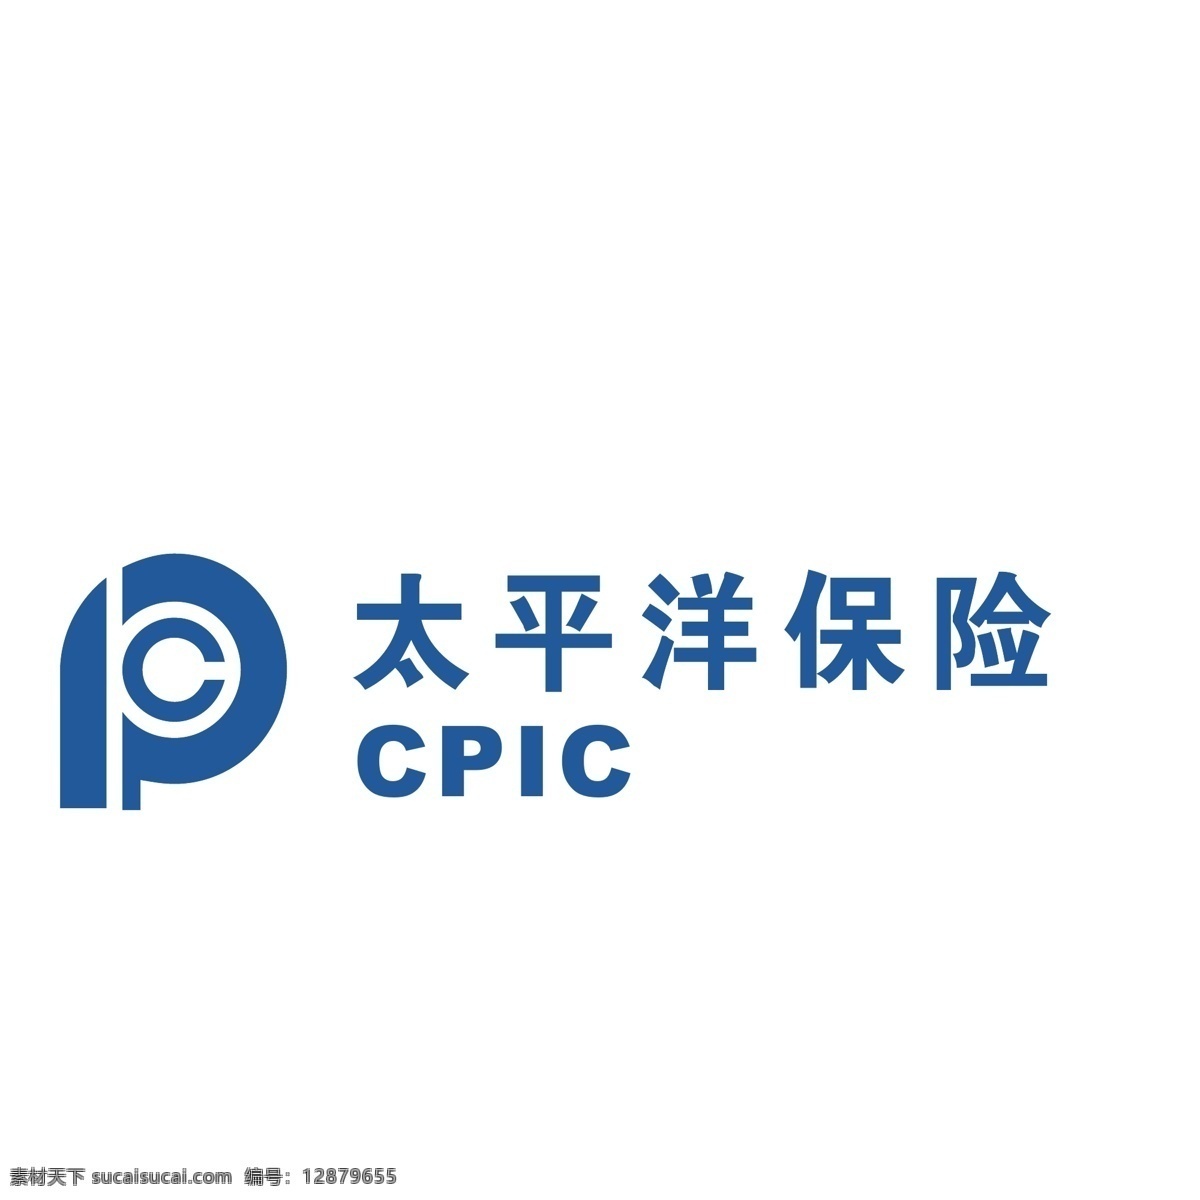 太平洋 保险 logo 保险logo